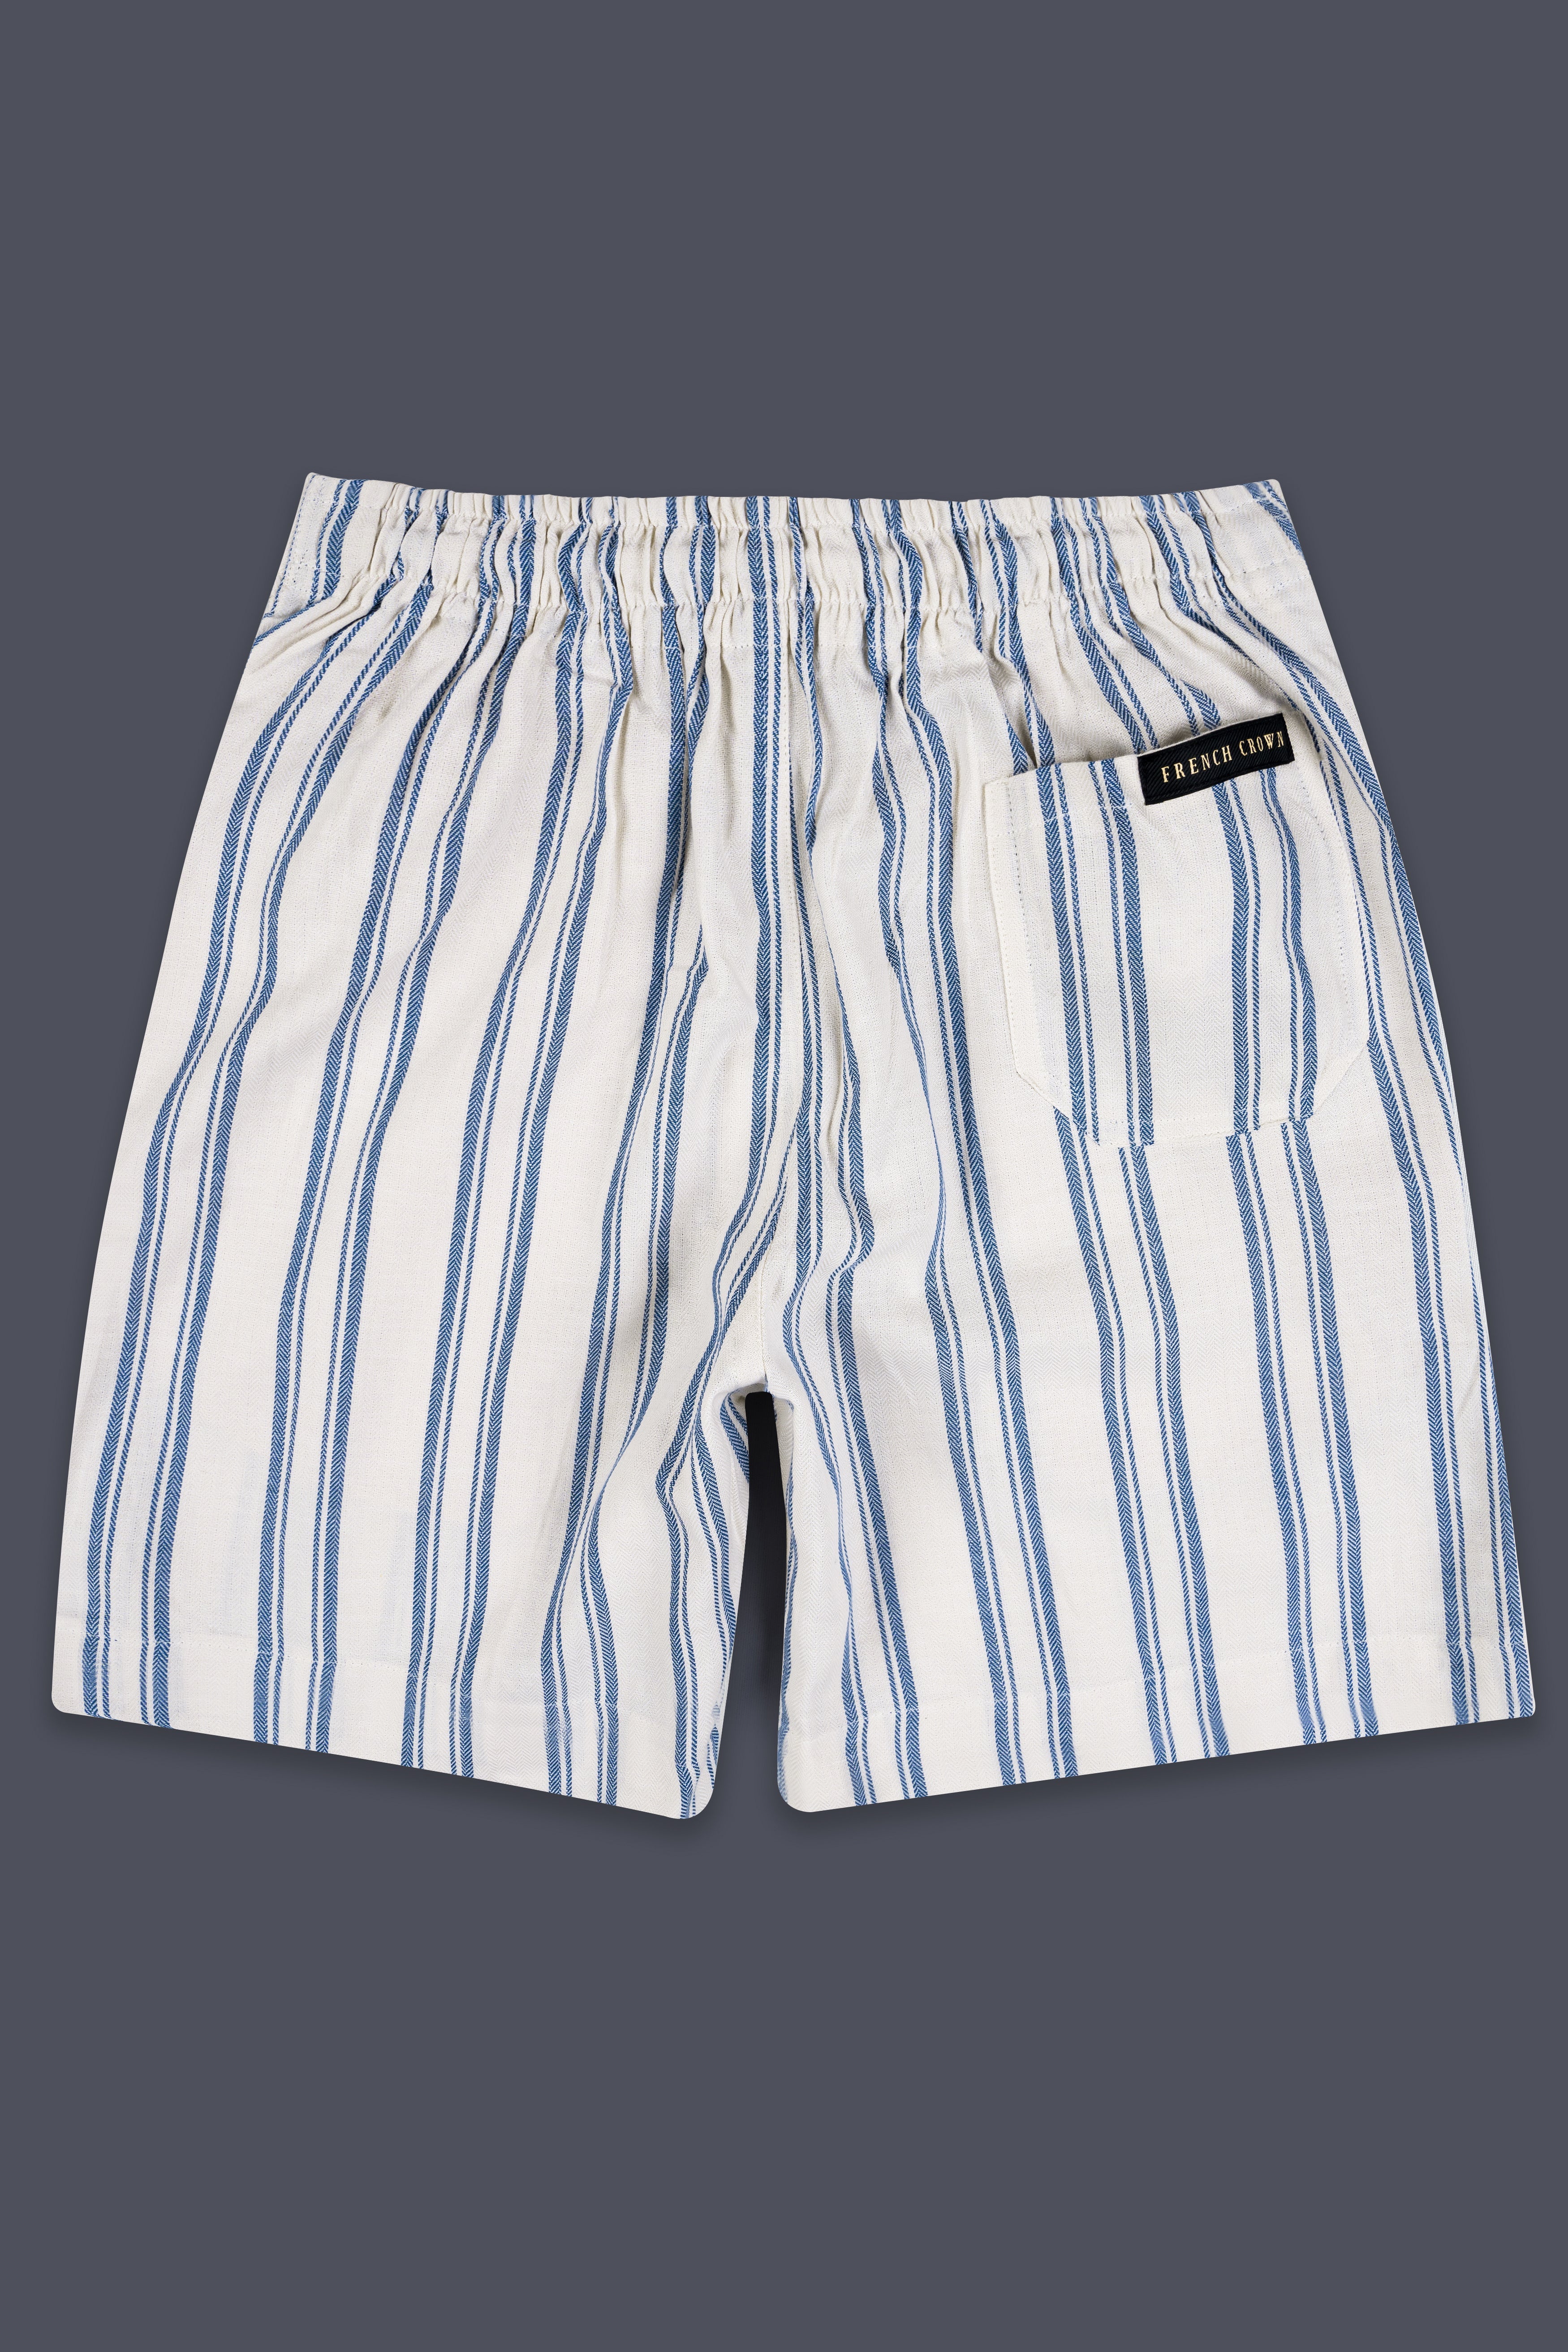 Bonjour Cream and Waikawa Blue Striped Dobby Textured Giza Cotton Shorts SR376-28, SR376-30, SR376-32, SR376-34, SR376-36, SR376-38, SR376-40, SR376-42, SR376-44